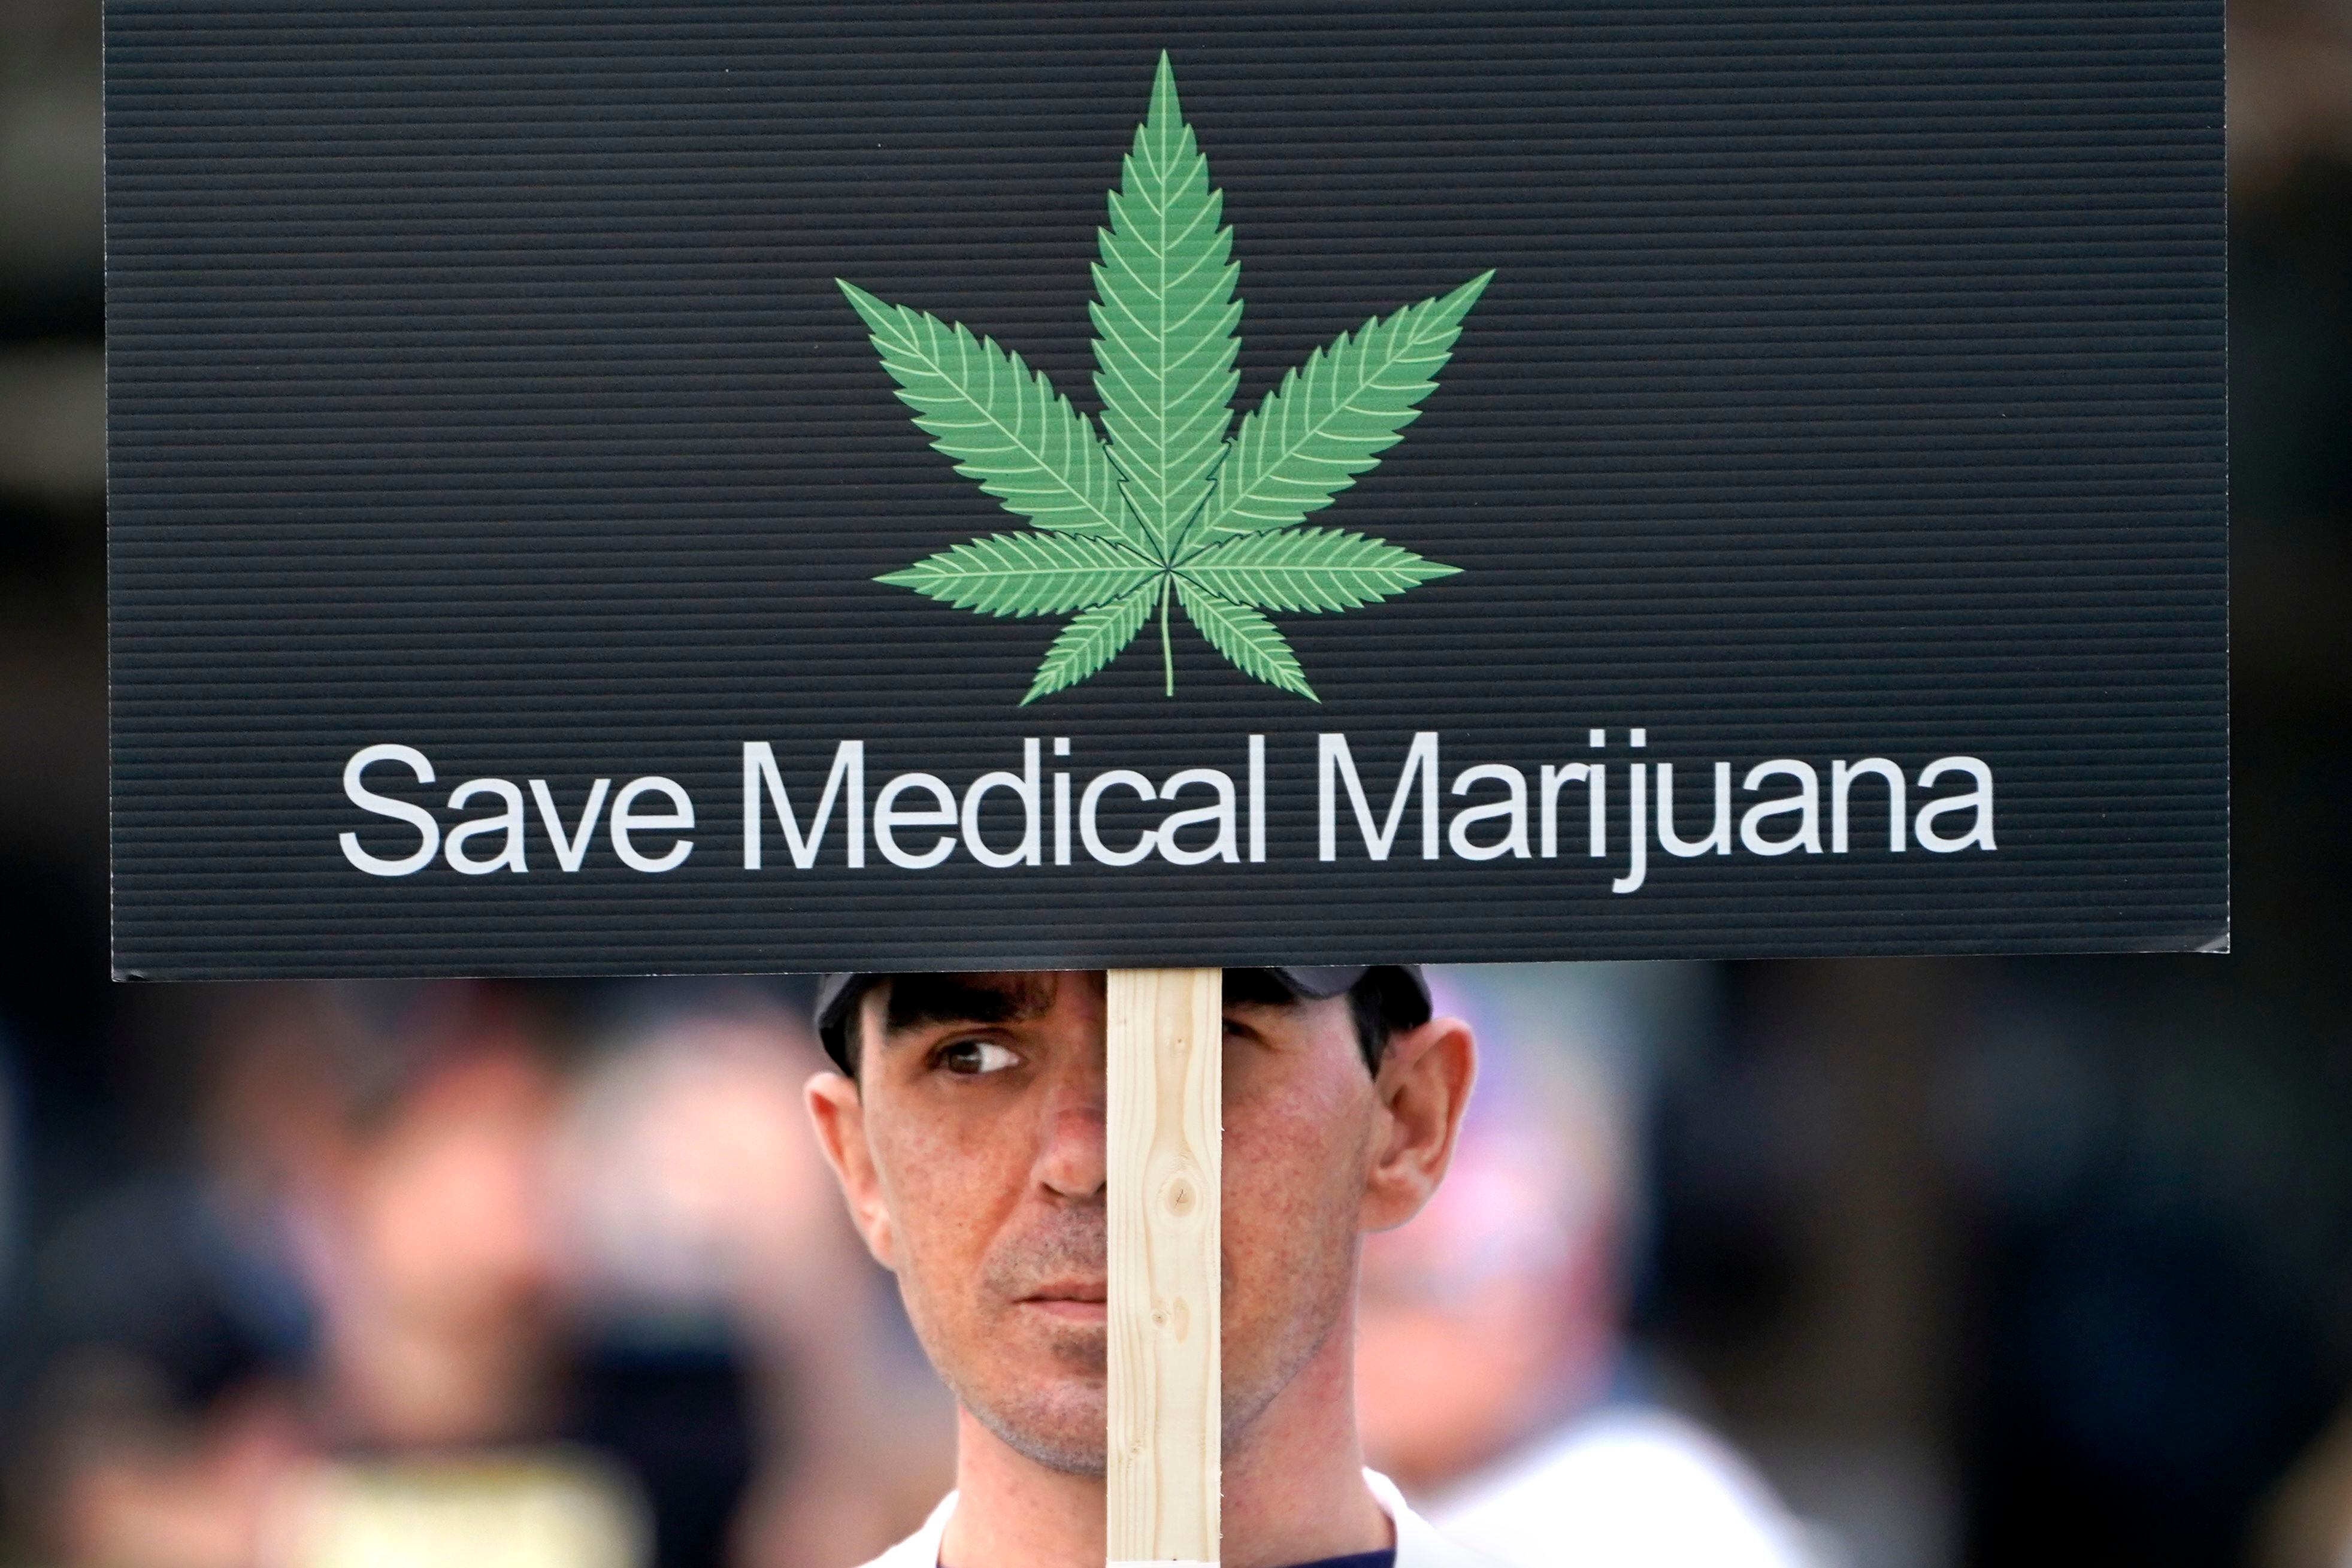 El inicial fervor que siguió a la legalización del cannabis medicinal en 2017 dio paso a la frustración y el desaliento entre muchos productores - crédito Robert F. Bukaty/AP